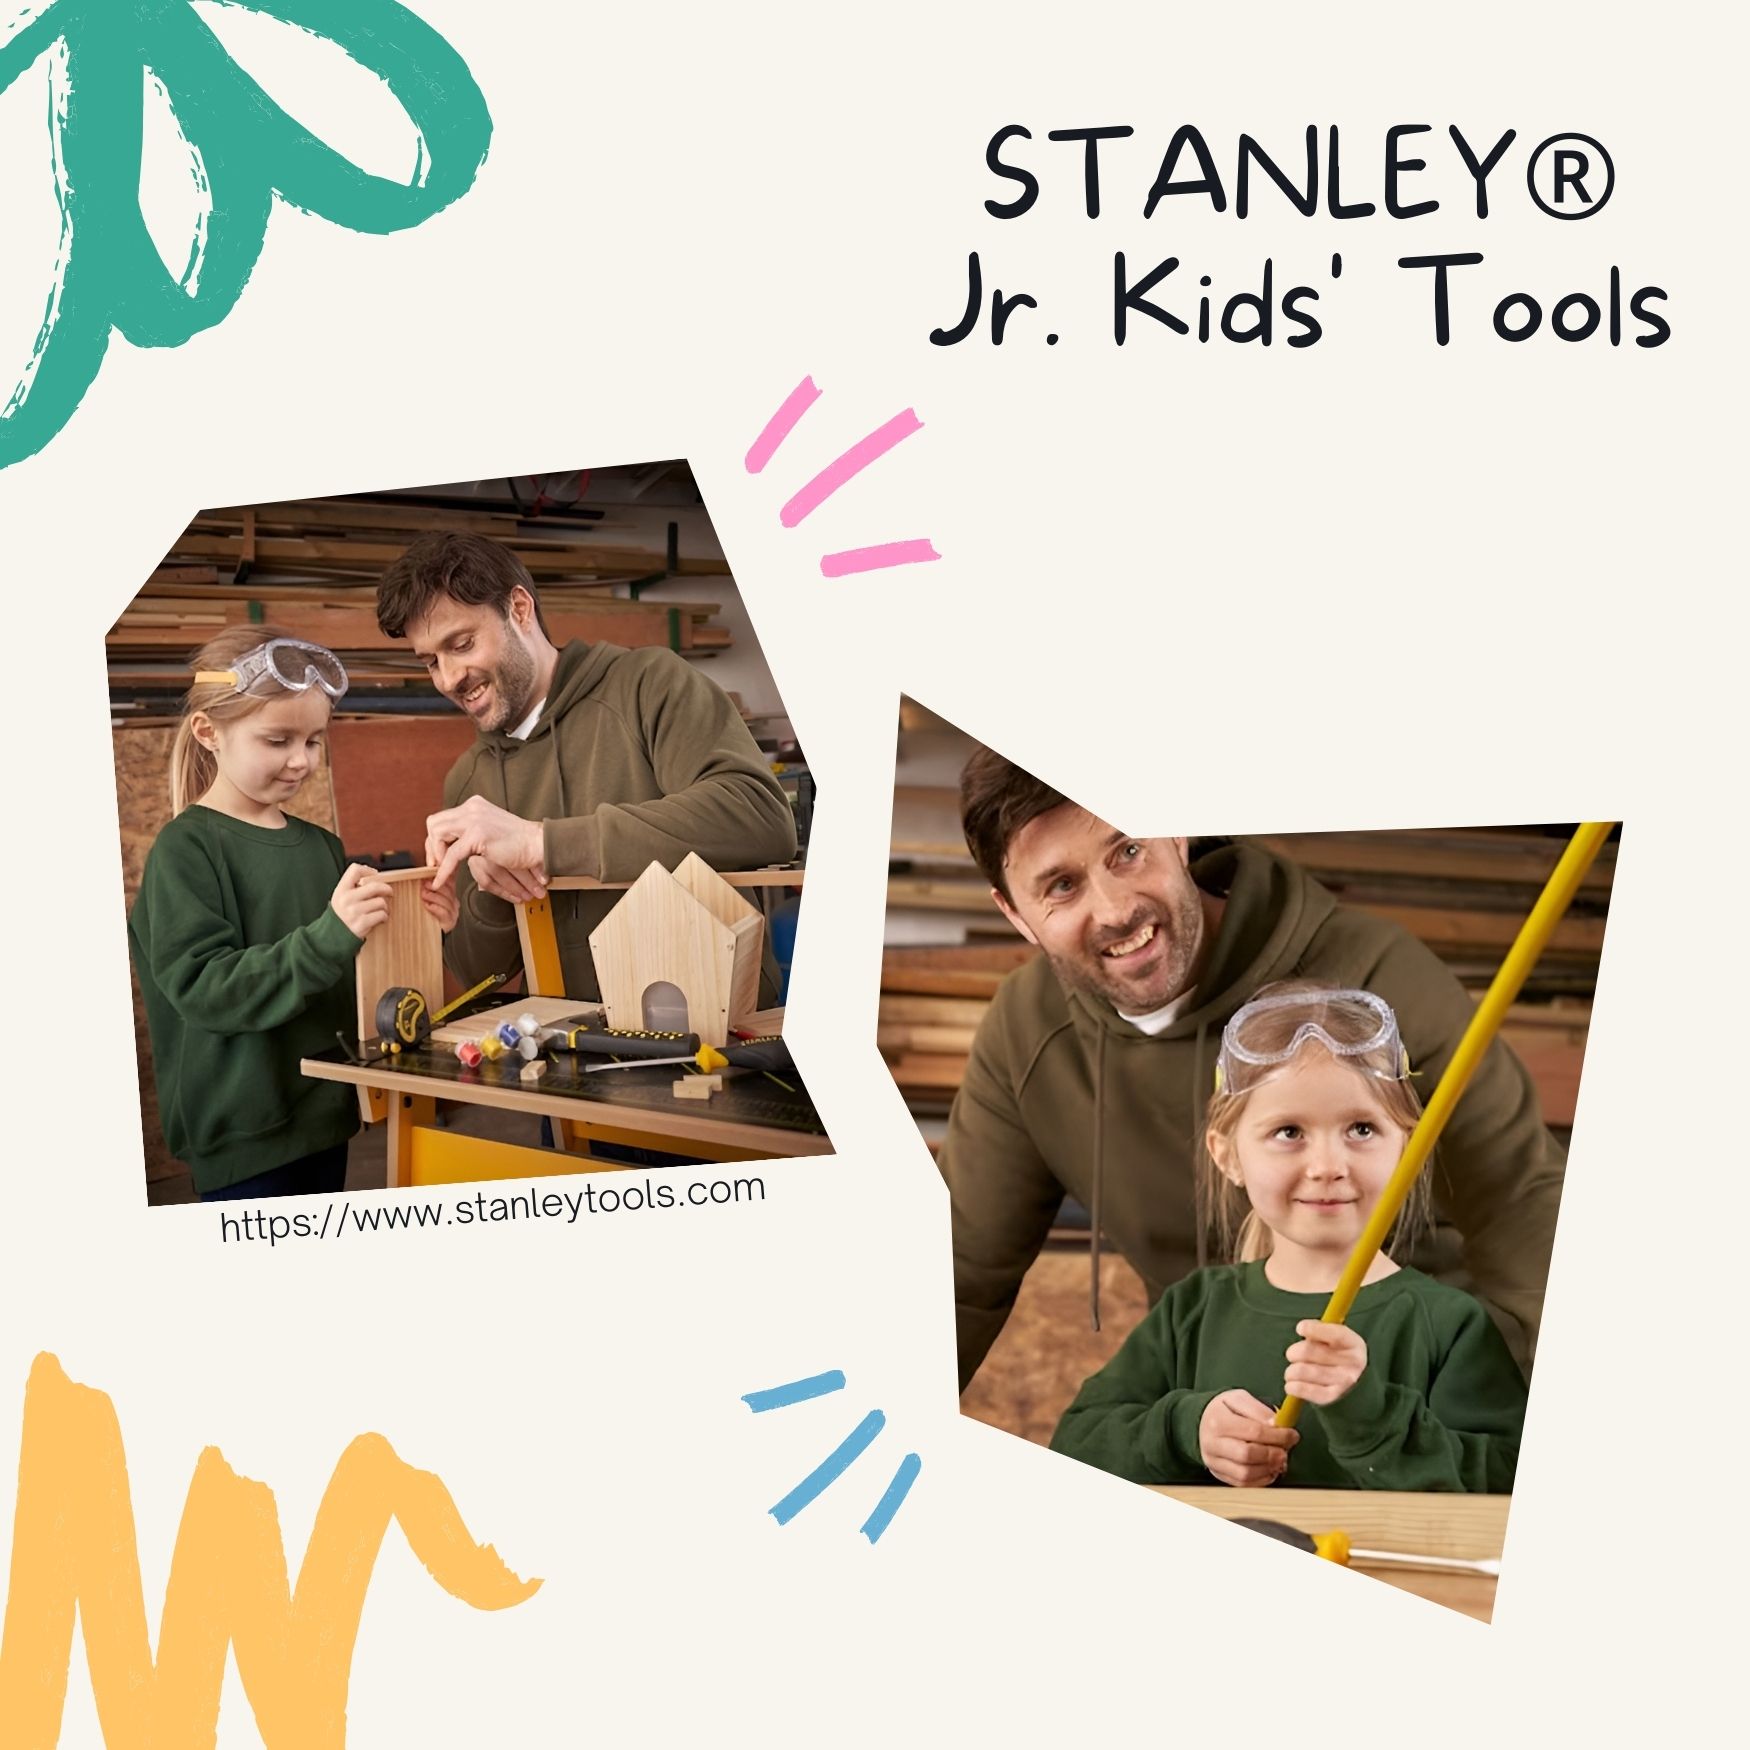 STANLEY® Jr. Kids' Tools